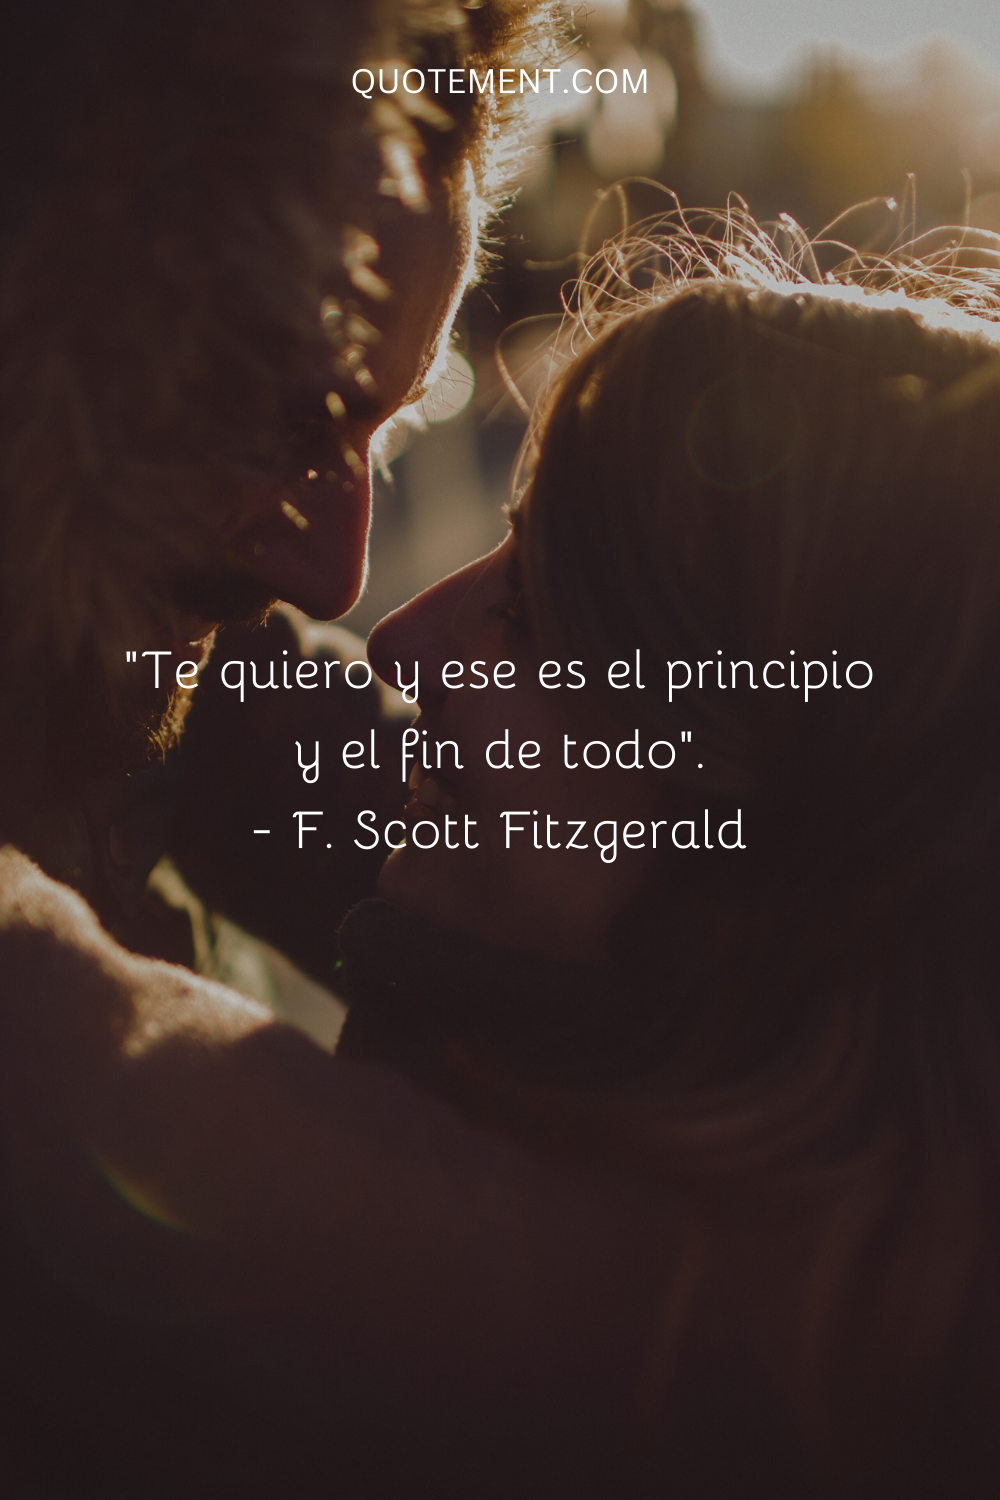 "Te quiero y eso es el principio y el fin de todo". - F. Scott Fitzgerald